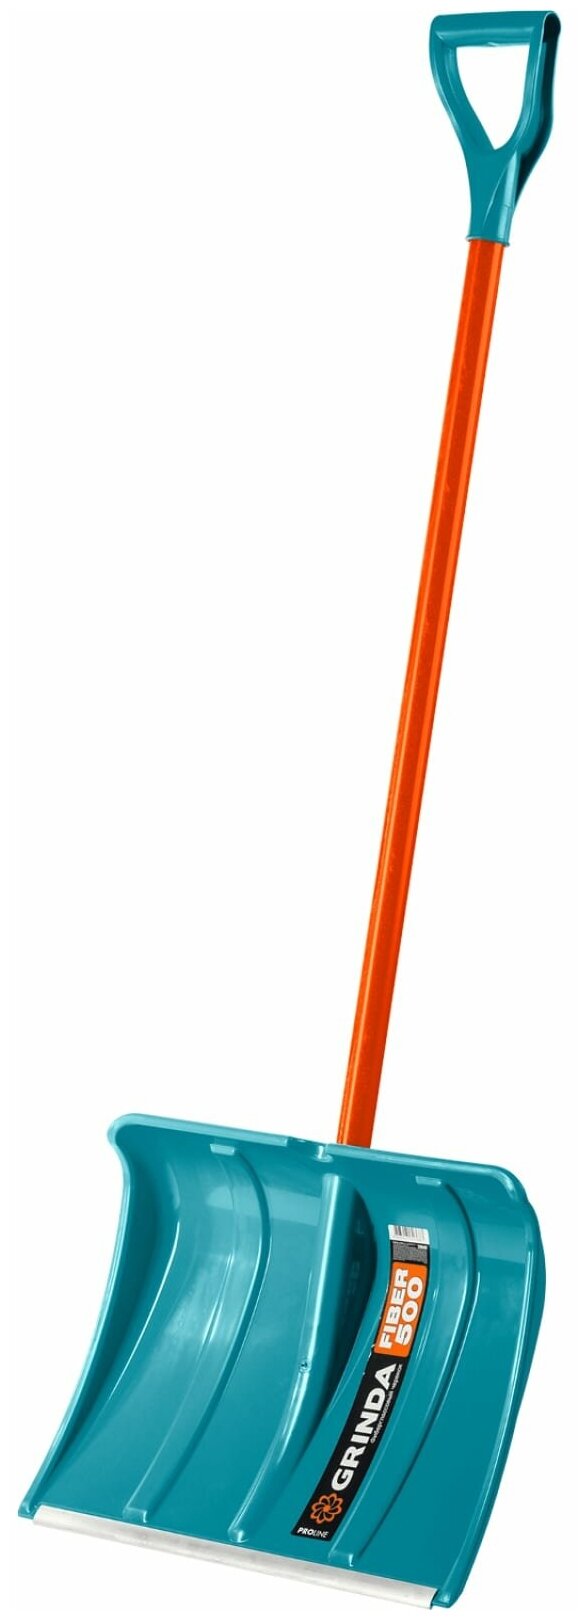 Снеговая лопата PROLine FIBER-500 500 мм пластиковая с алюминиевой планкой особопрочный легкий черенок из фибергласса V-ручка GRINDA 39940